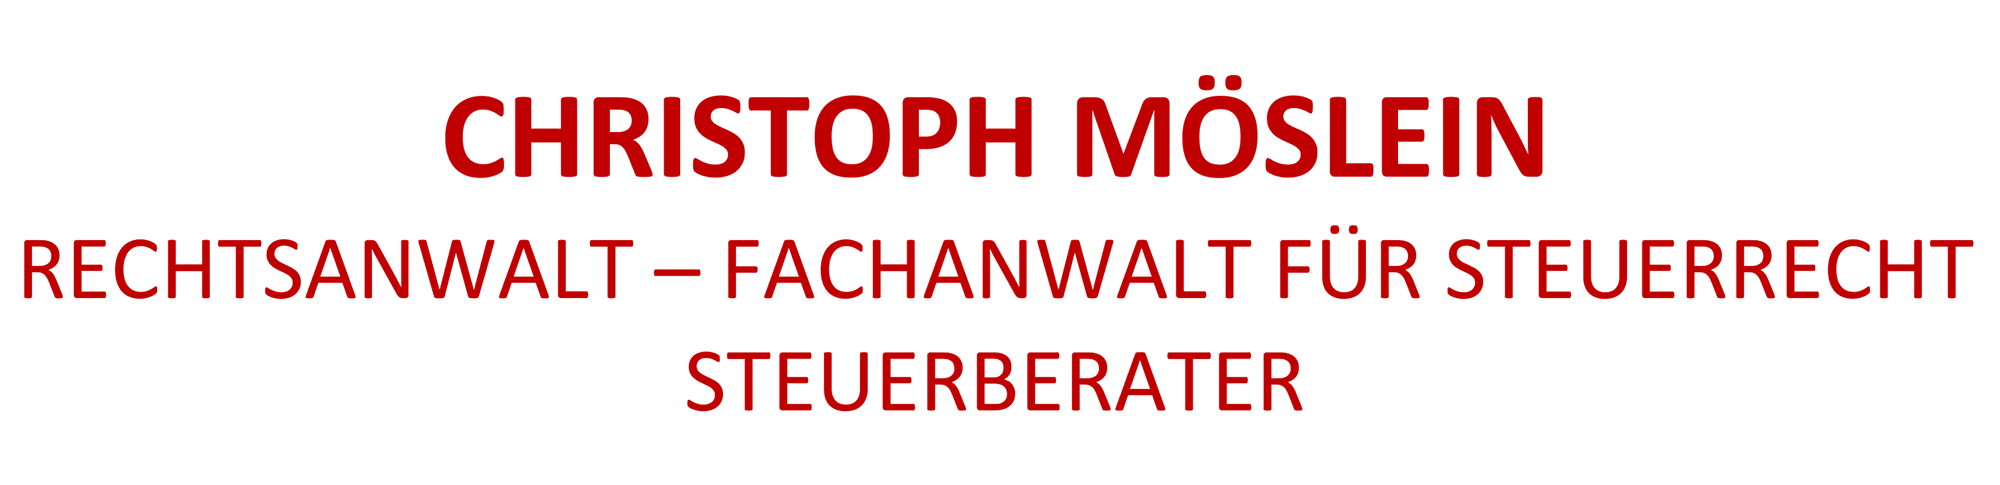 christoph moeslein logo - Alle Mitglieder